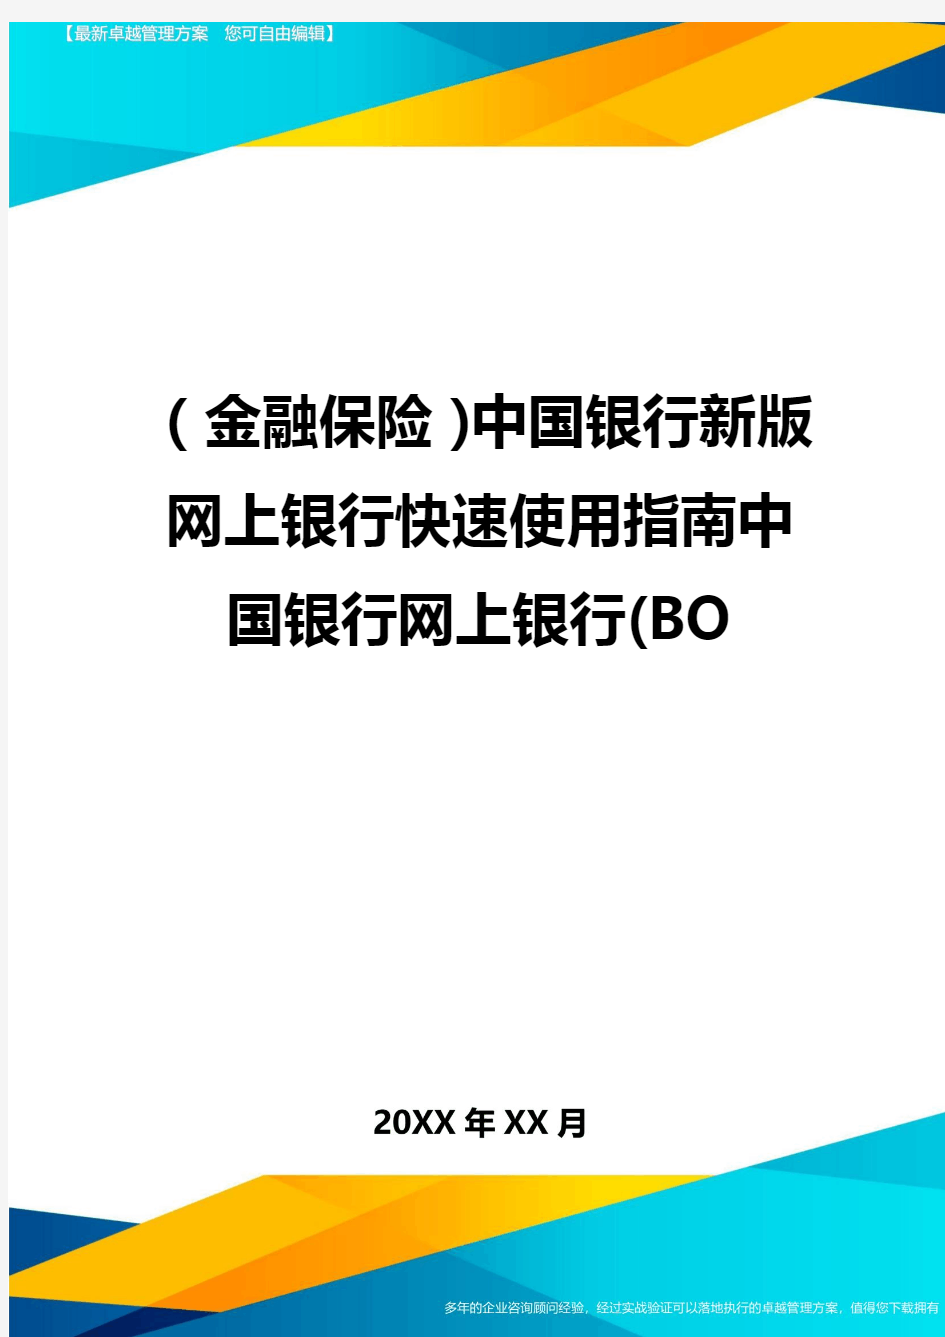 2020年(金融保险)中国银行新版网上银行快速使用指南中国银行网上银行(BO